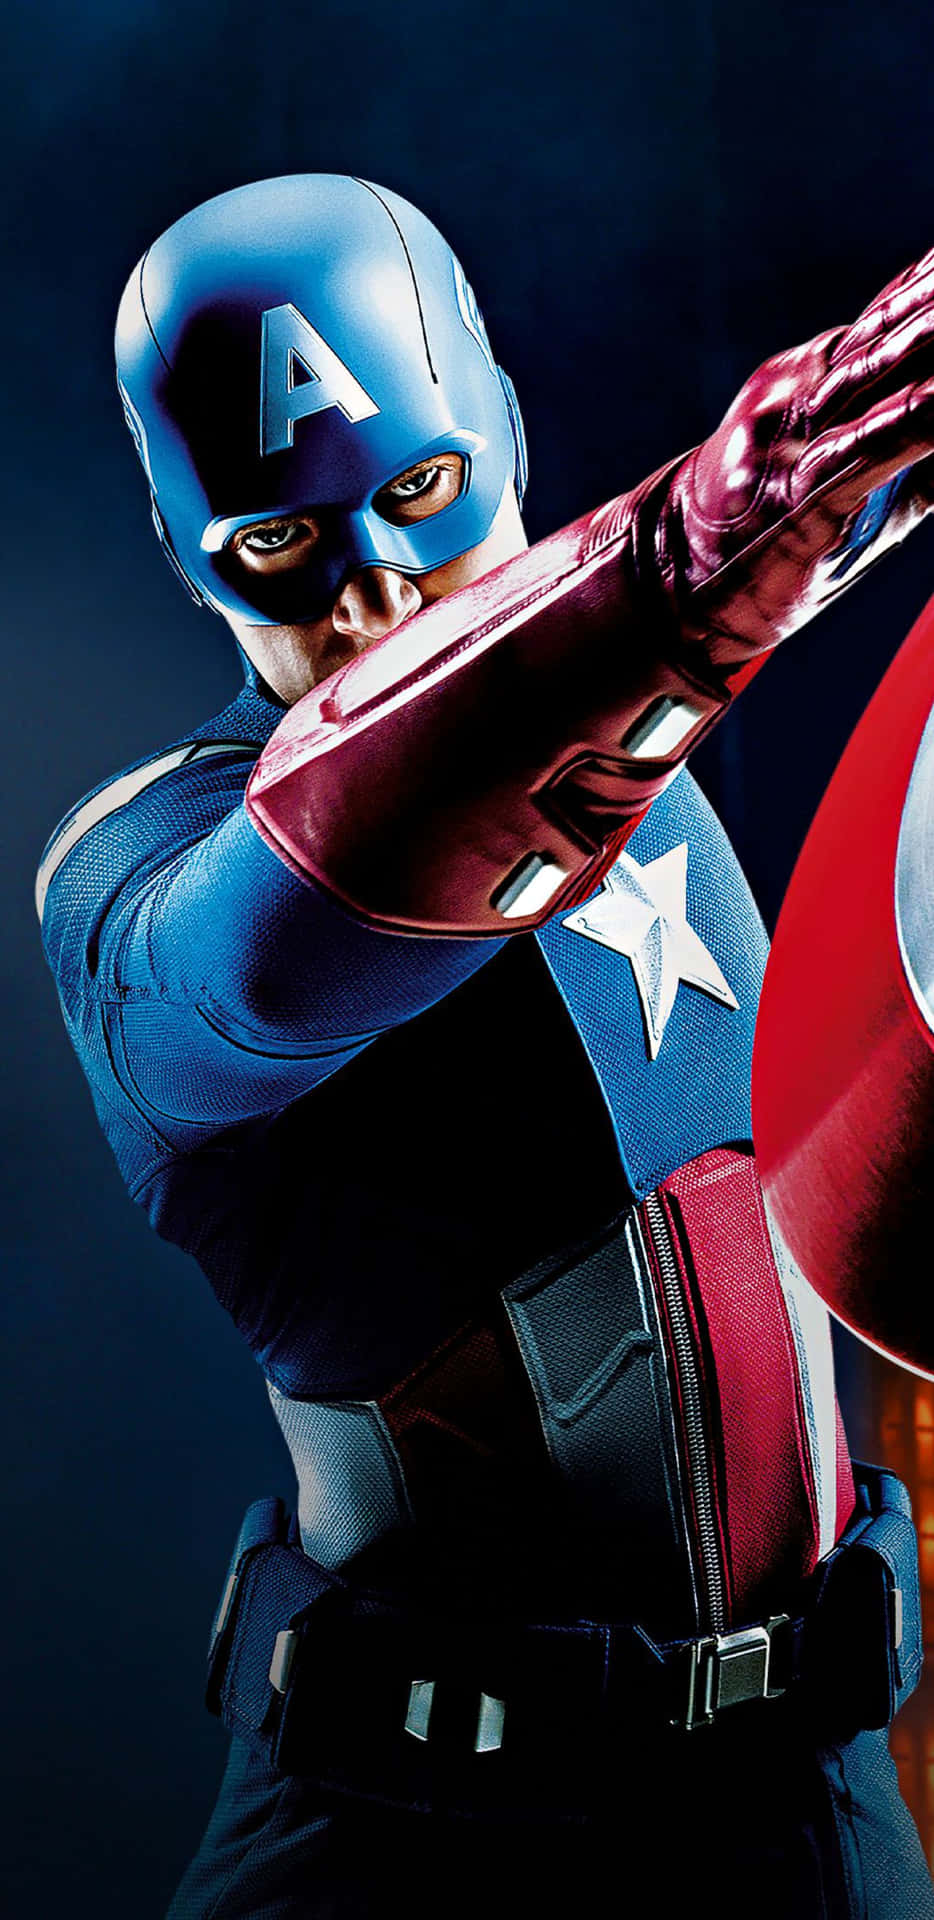 Pixel3xl Bakgrundsbild Med Captain America Från Avengers.